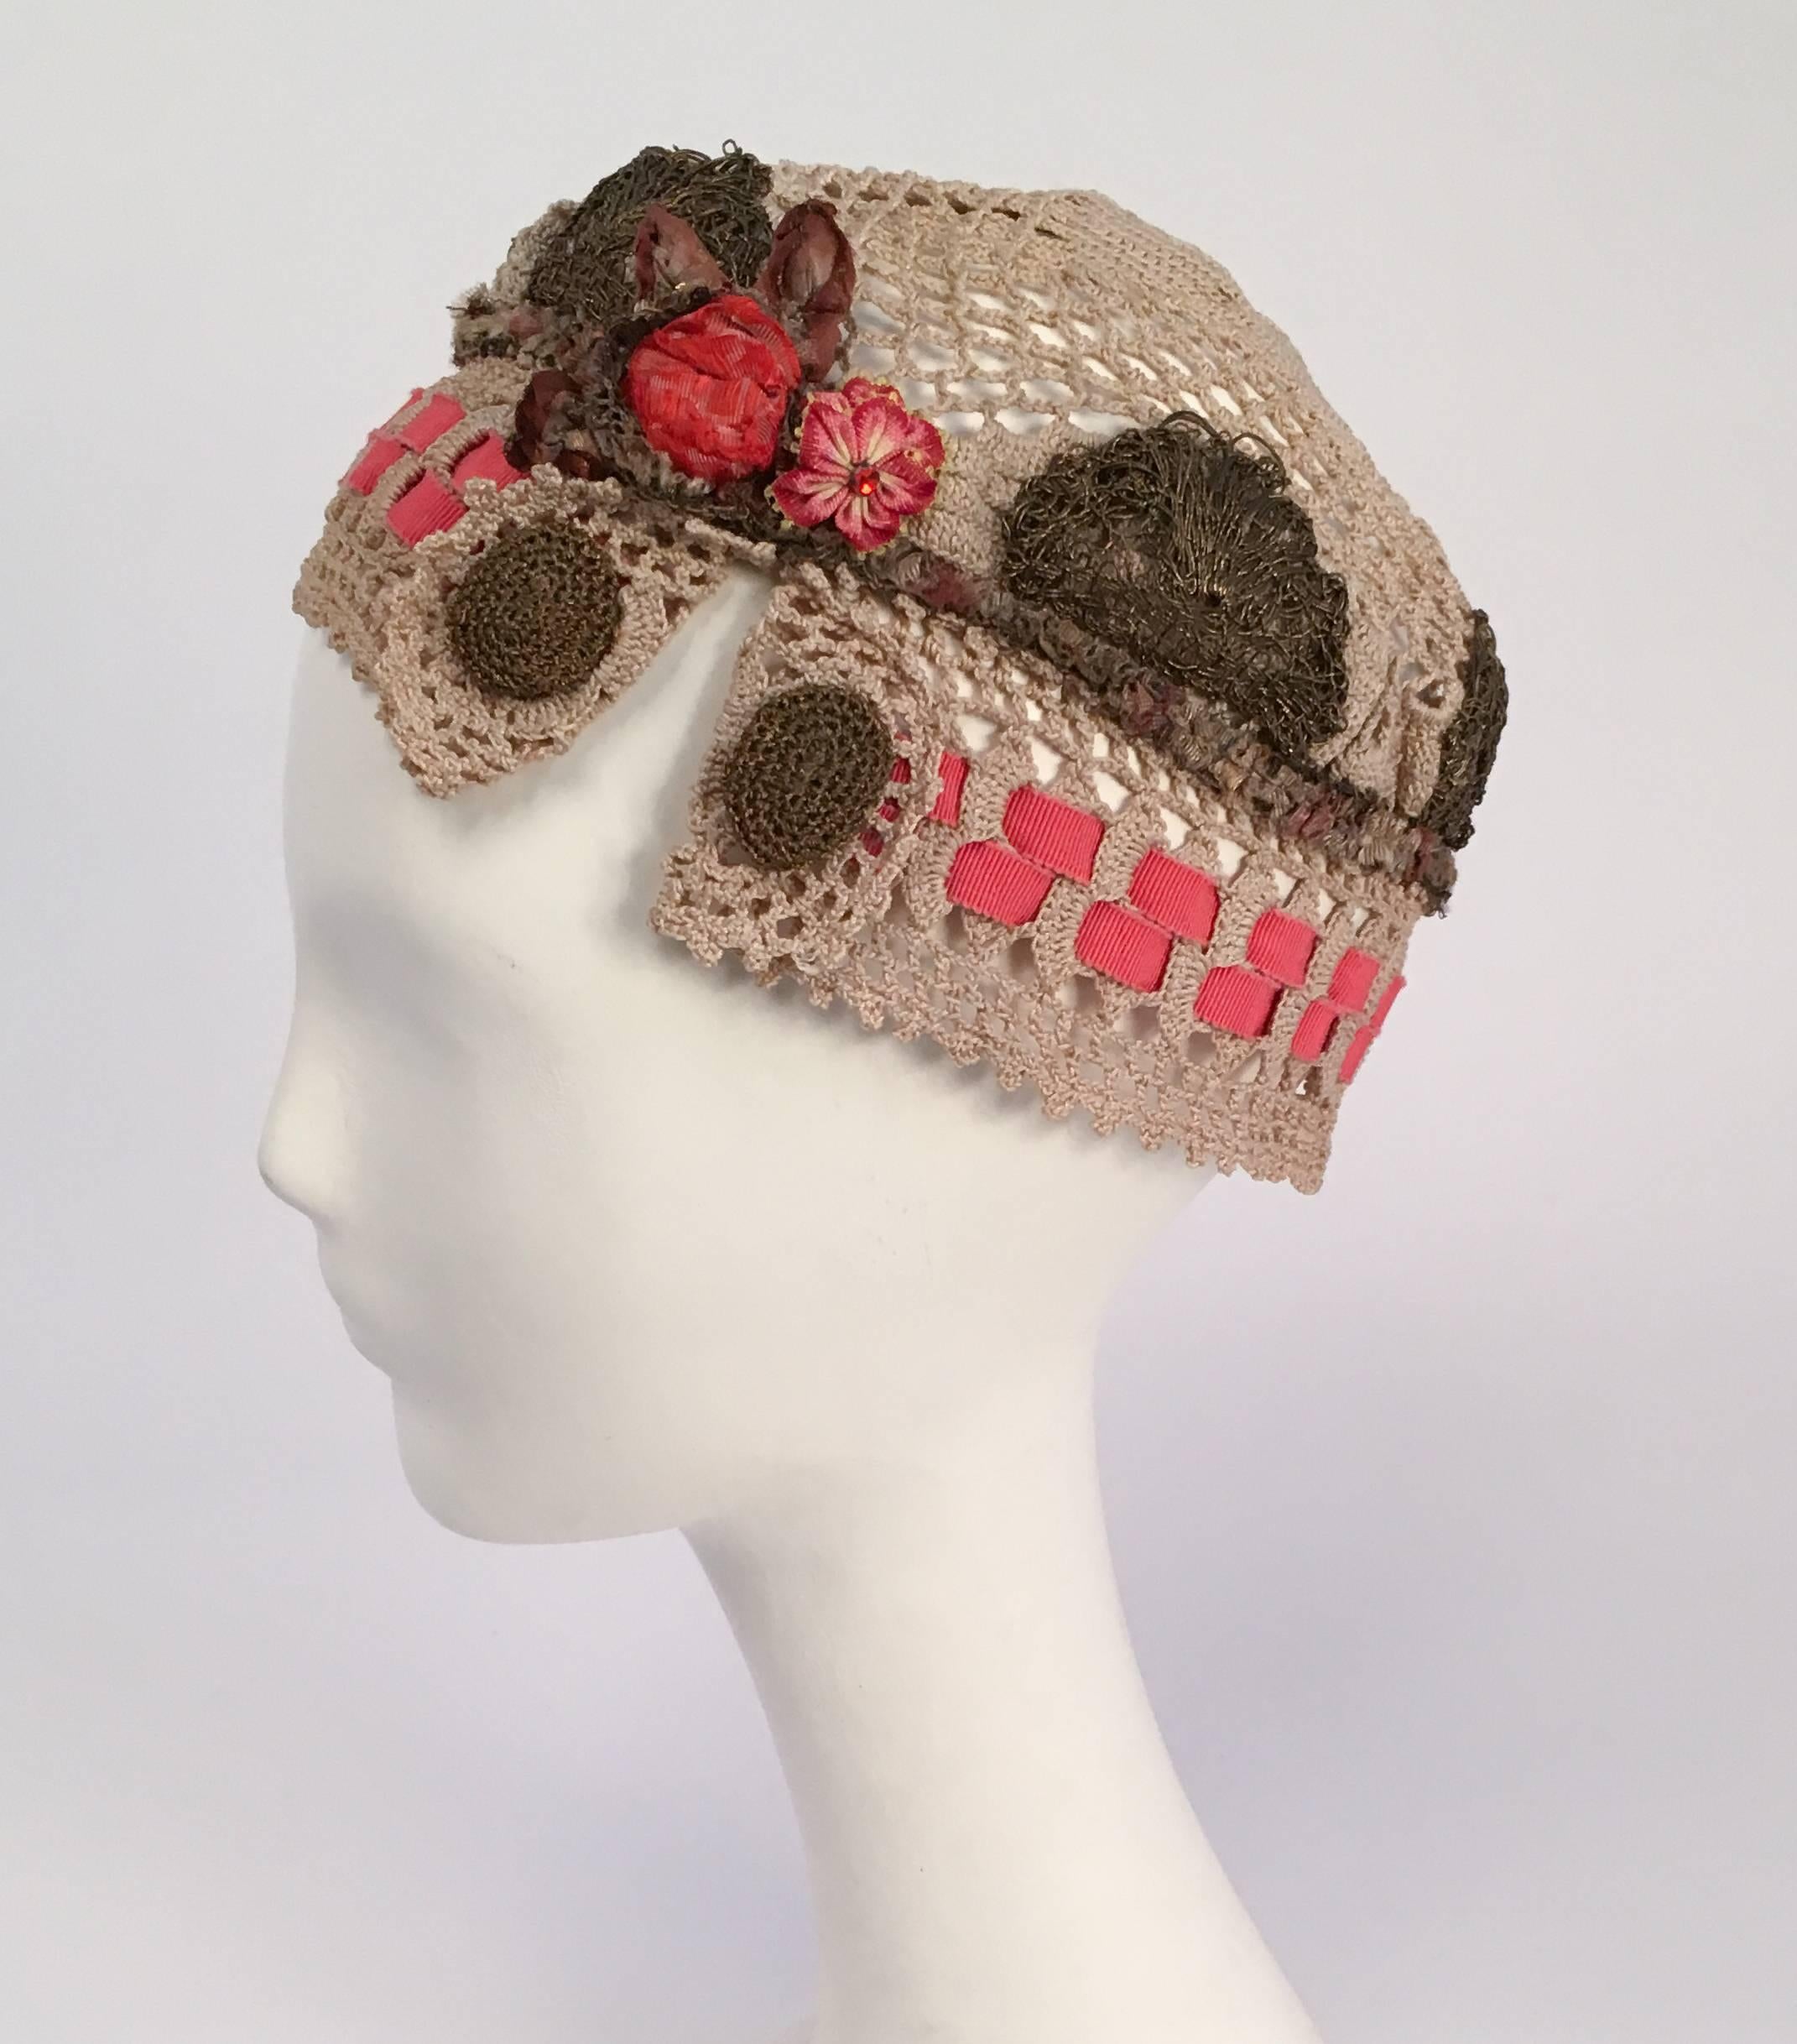 20er Jahre Juliet Cap mit Messing Spitze & Blumen Seite Detail. Durchbrochene Häkelmütze mit Blumenbändern und Messingspitze verziert. 